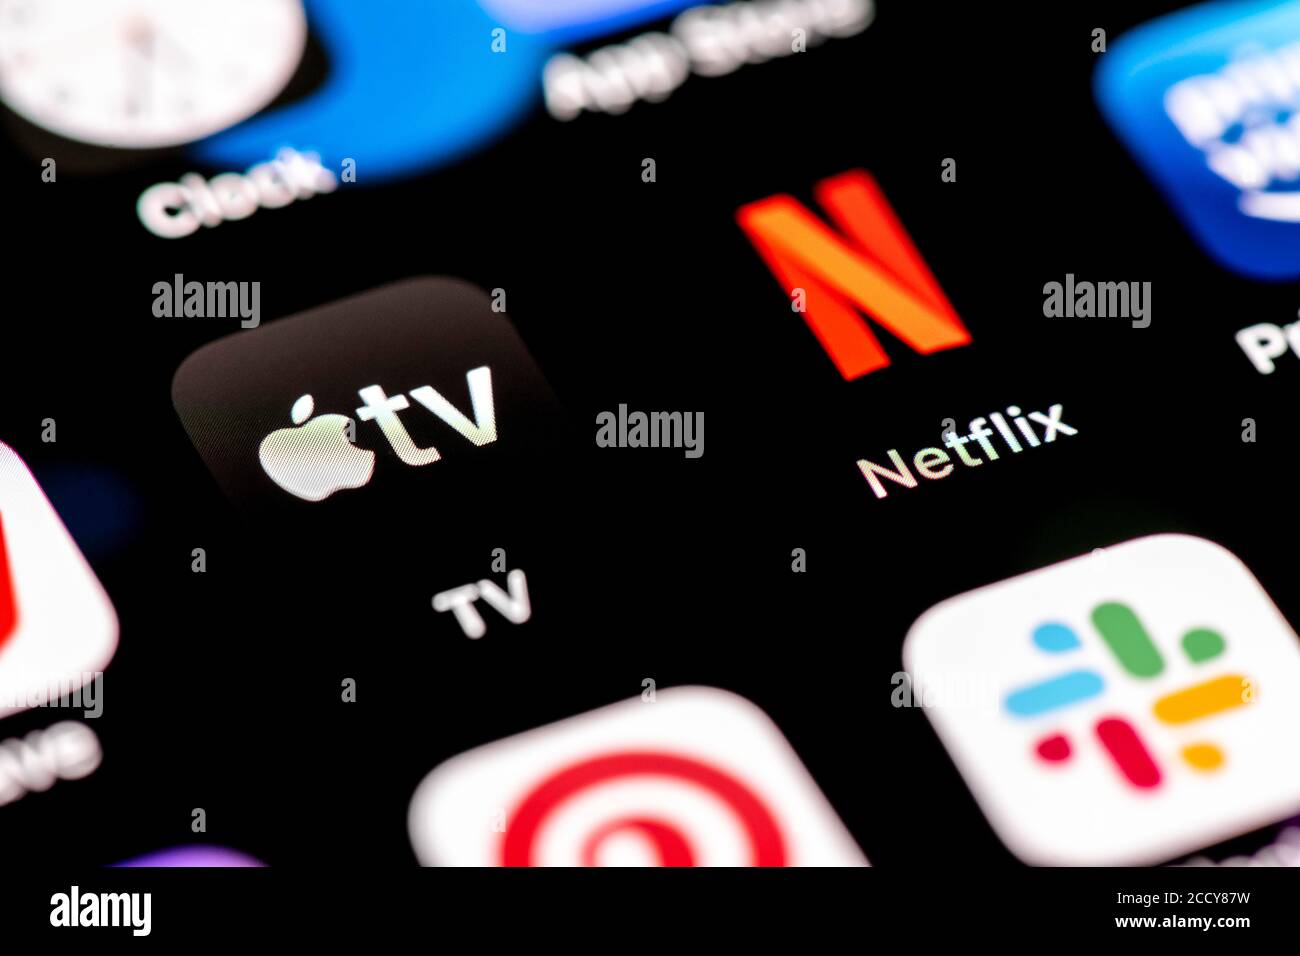 Netflix et Apple TV, streaming vidéo, icônes d'application sur un écran de téléphone mobile, iPhone, smartphone, gros plan, plein écran Banque D'Images